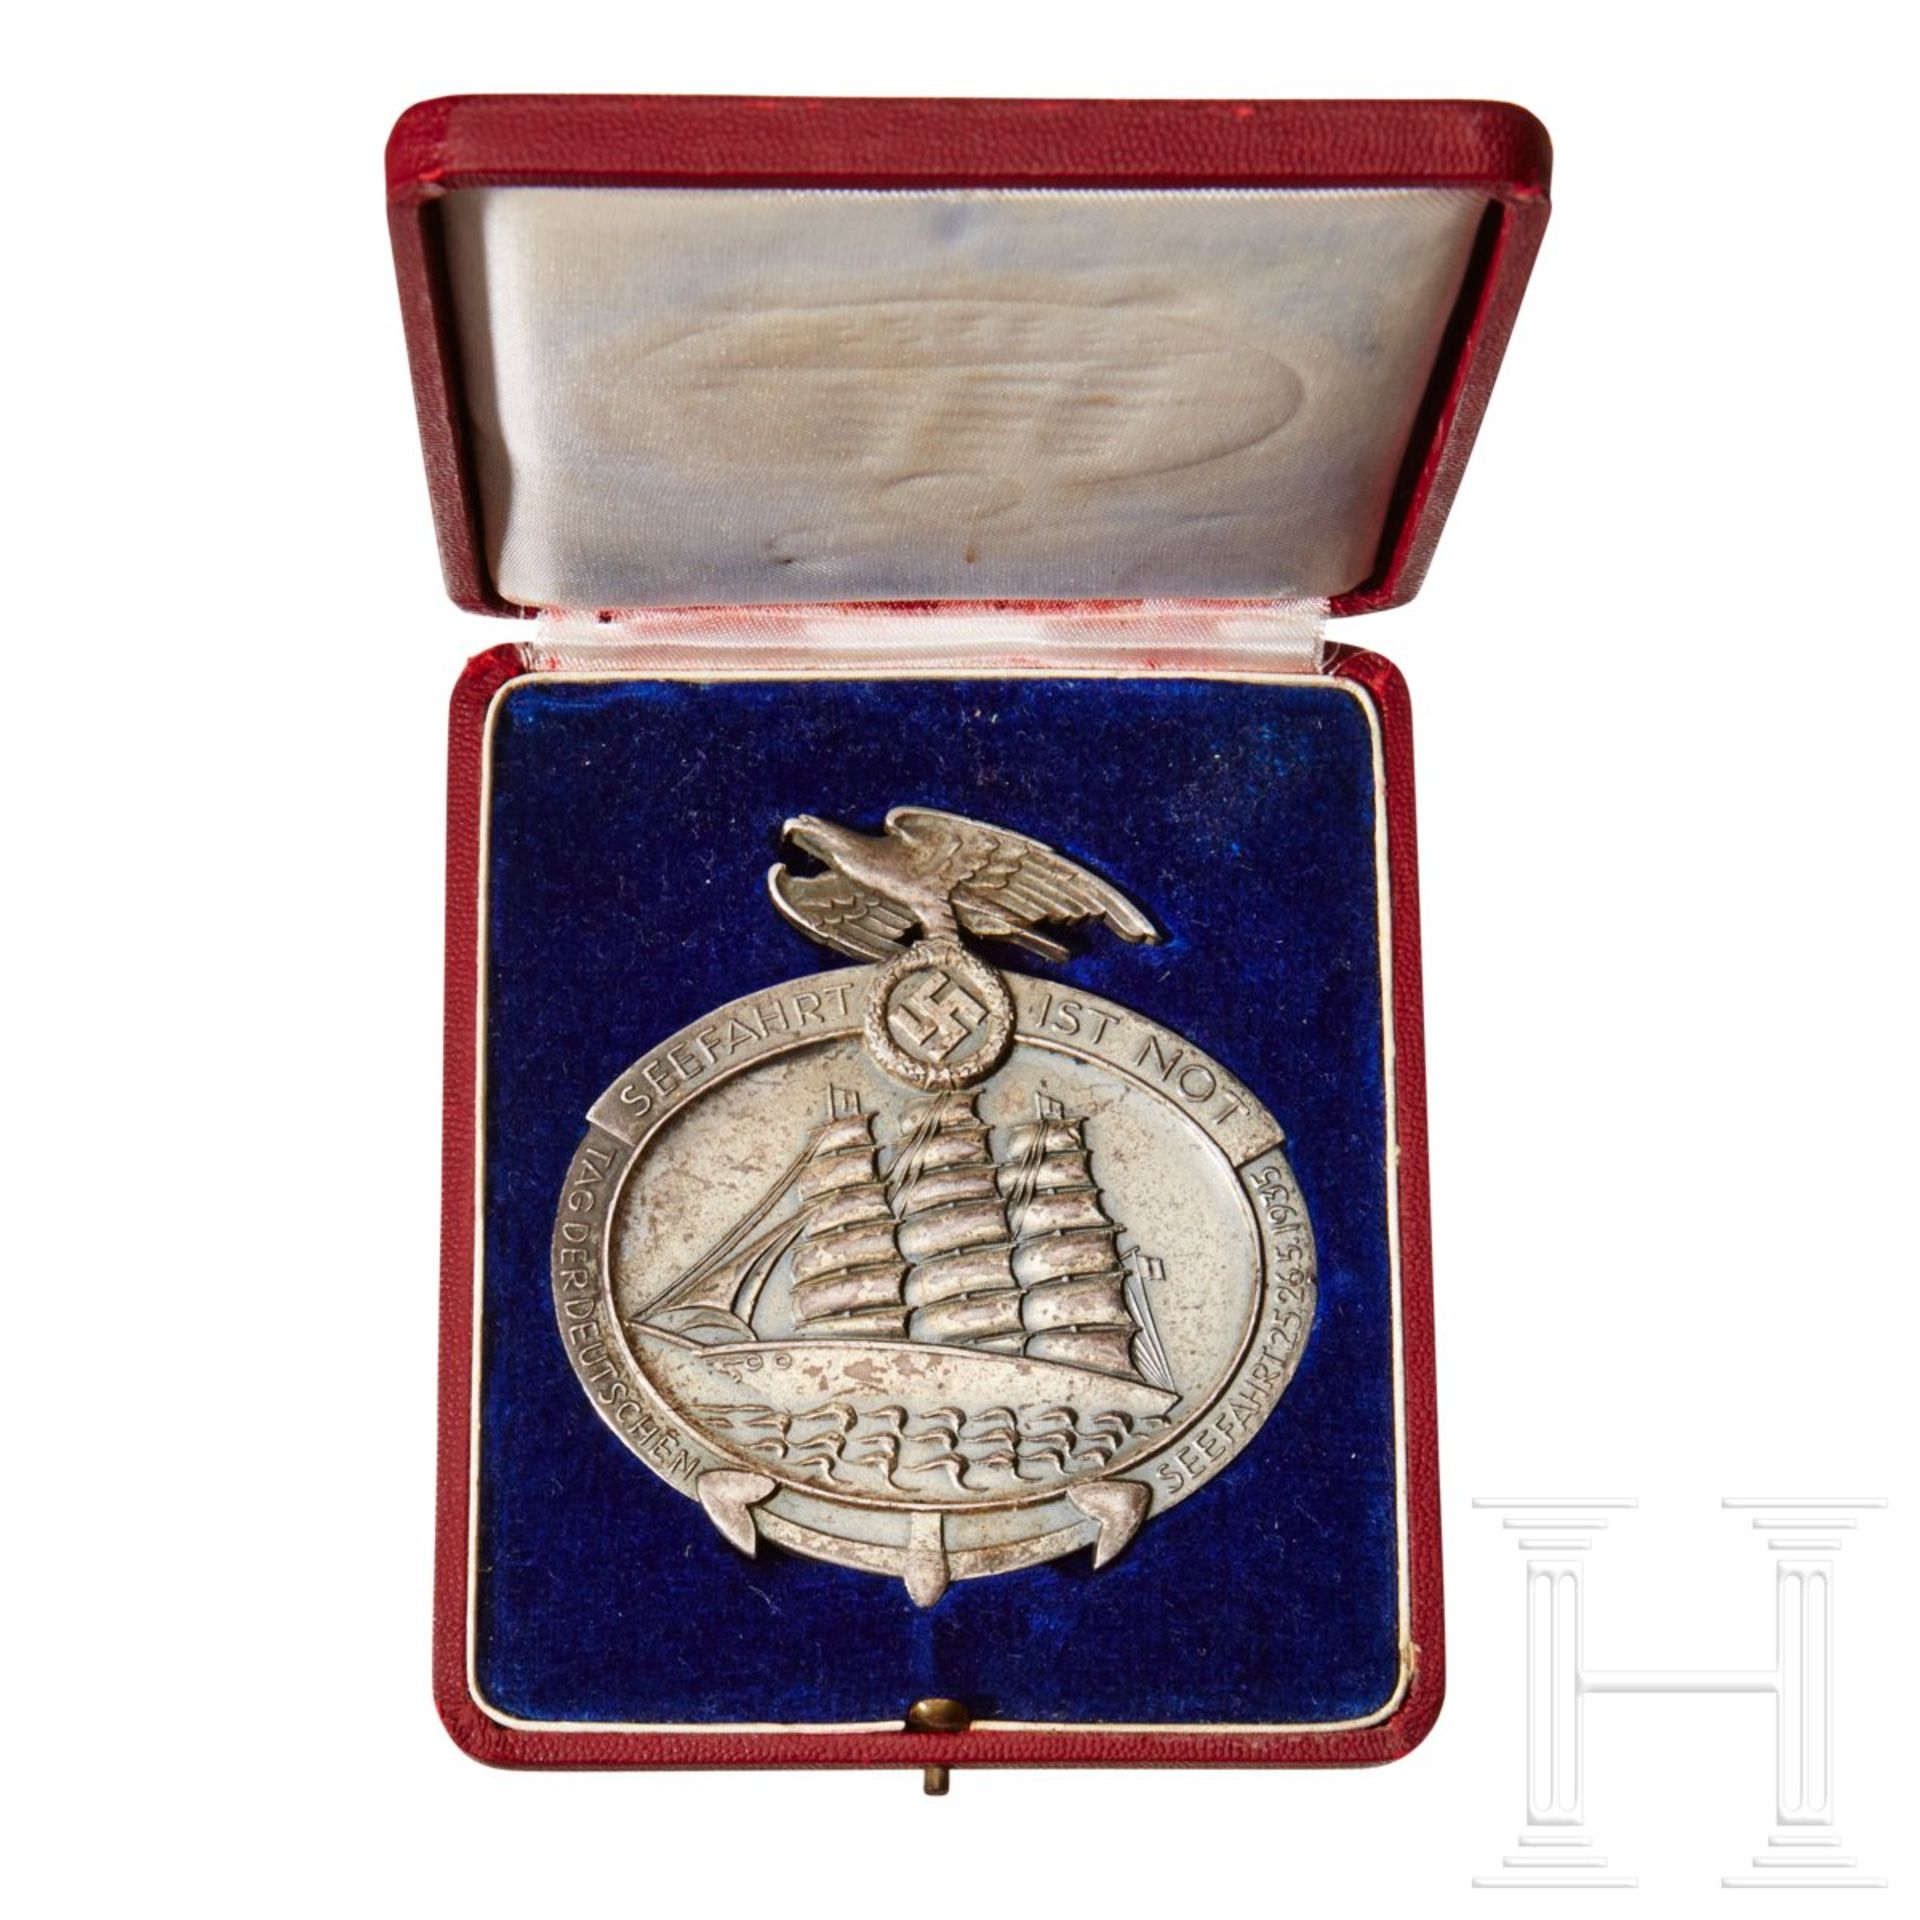 <de>A Day of German Seafaring 1935 Silver Award<br>Cased non-portable silver award. Obverse depicts 